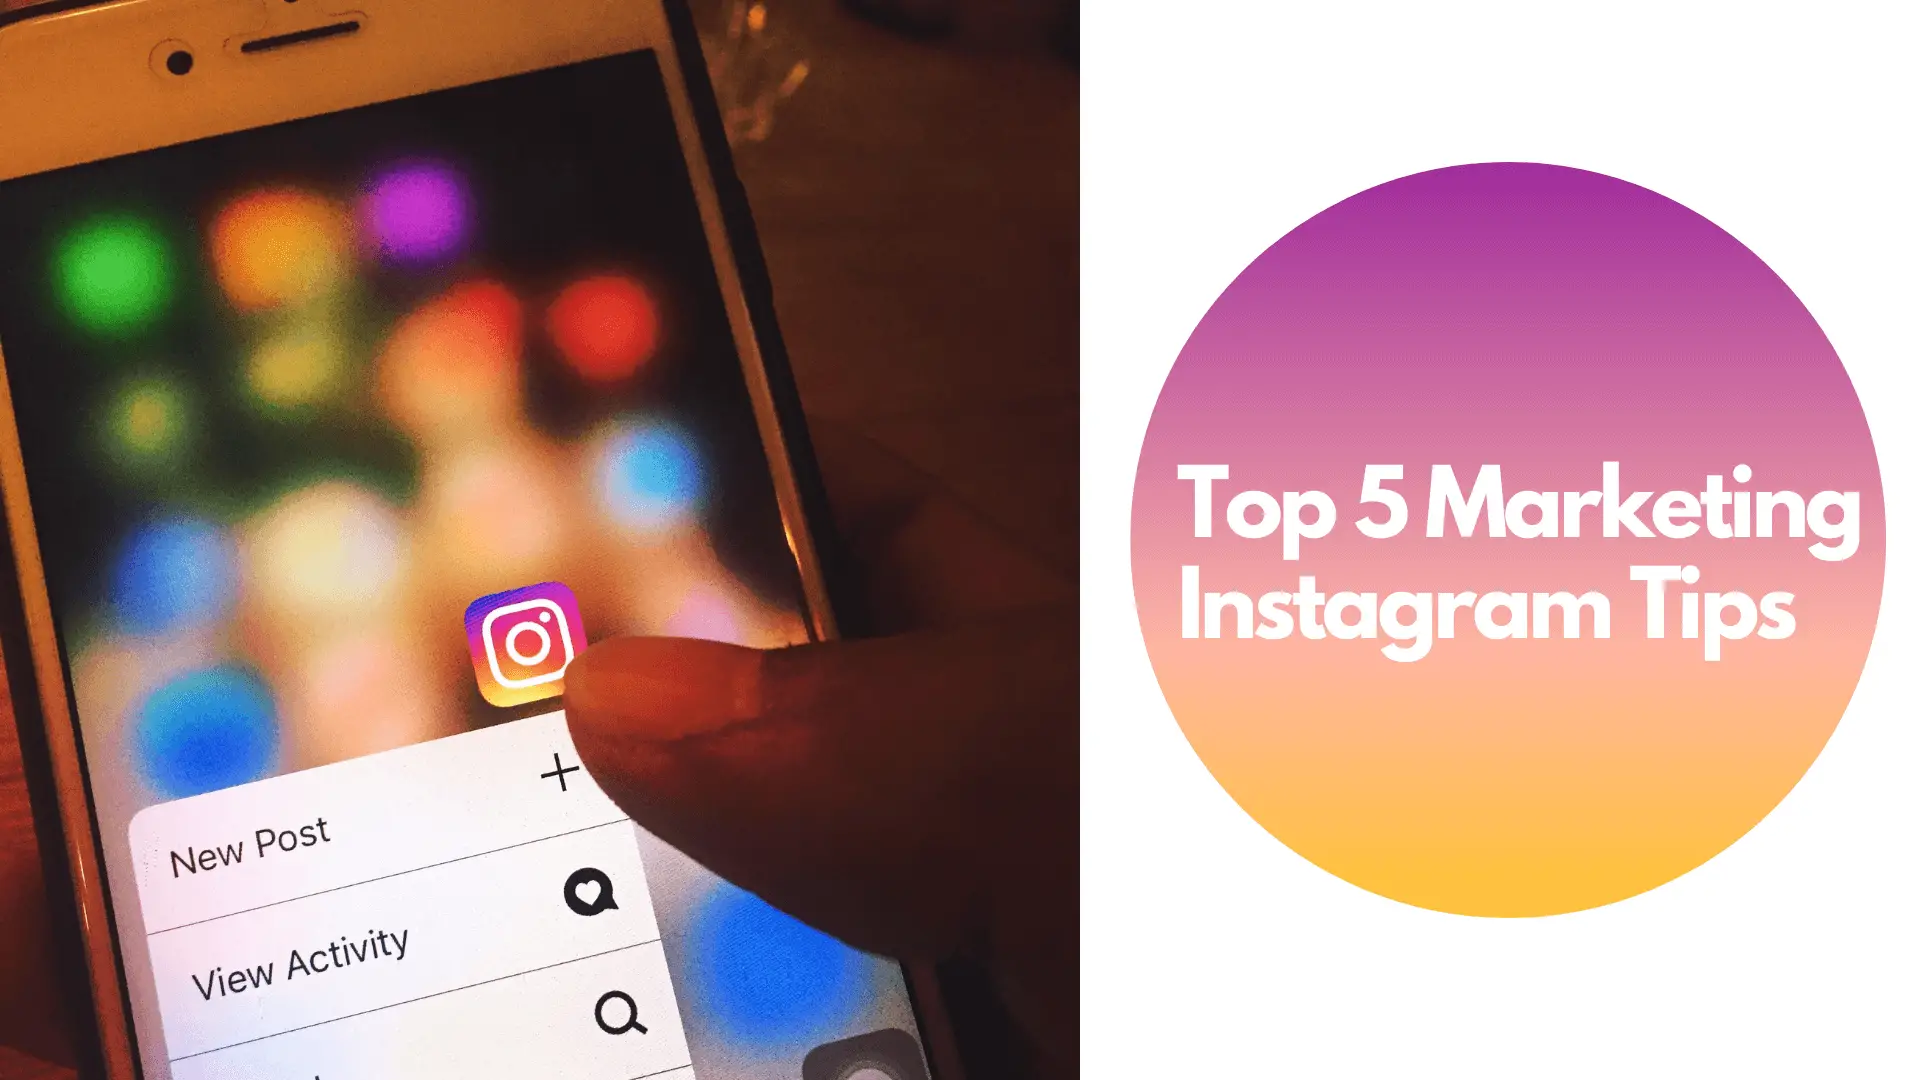 Top 5 Marketing Instagram Tips